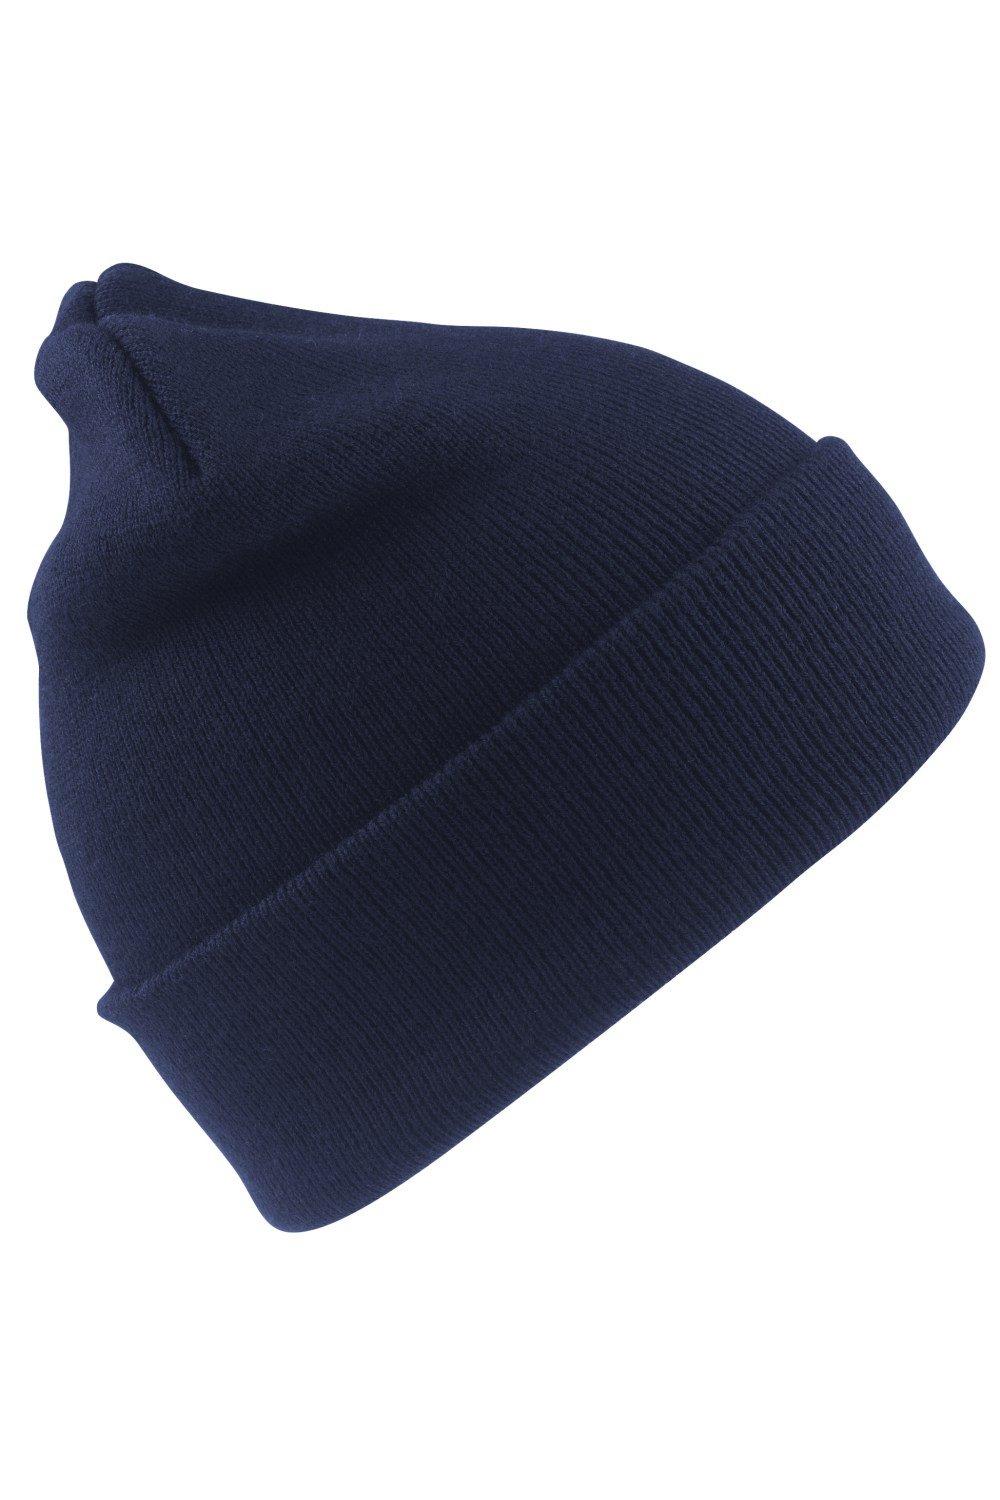 Шерстяная термолыжная/зимняя шапка с утеплителем Thinsulate 3M Result, темно-синий пряжа семеновская пряжа karolina 12554 небо 5 шт по 100 г